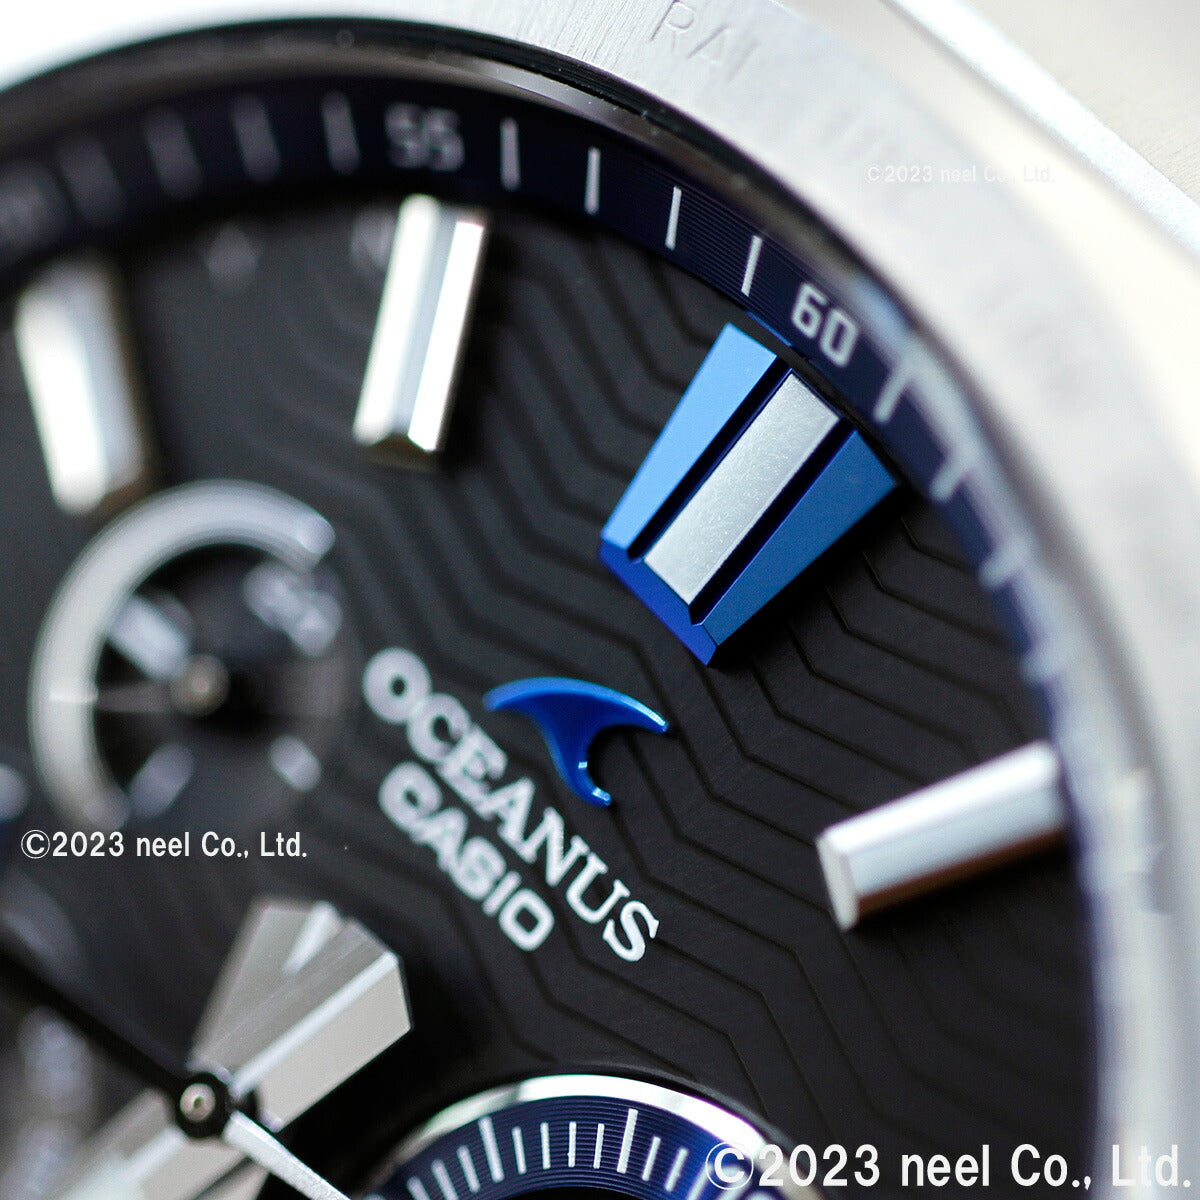 カシオ オシアナス 電波 ソーラー 腕時計 メンズ タフソーラー CASIO OCEANUS CLASSIC LINE OCW-T6000-1AJF Premium Production Line